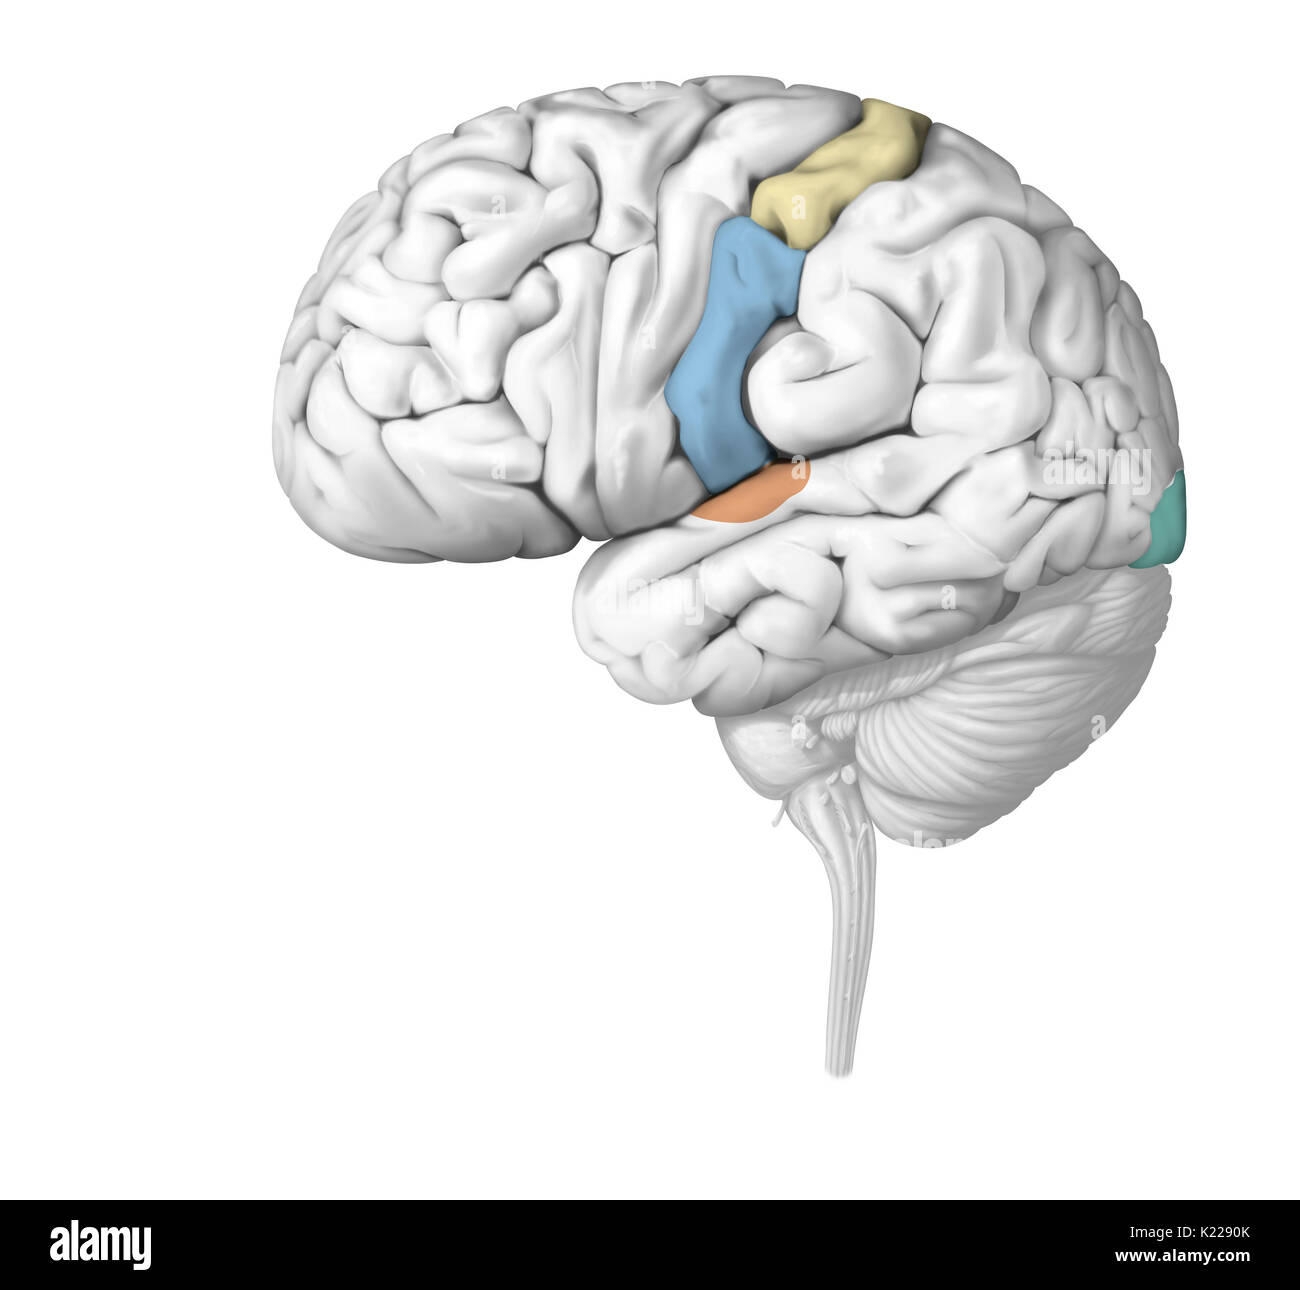 Les impulsions nerveuses sont analysés dans les zones du cerveau spécifiques à chaque sens. Blessure d'un organe sensoriel peut sérieusement affecter son fonctionnement. Banque D'Images